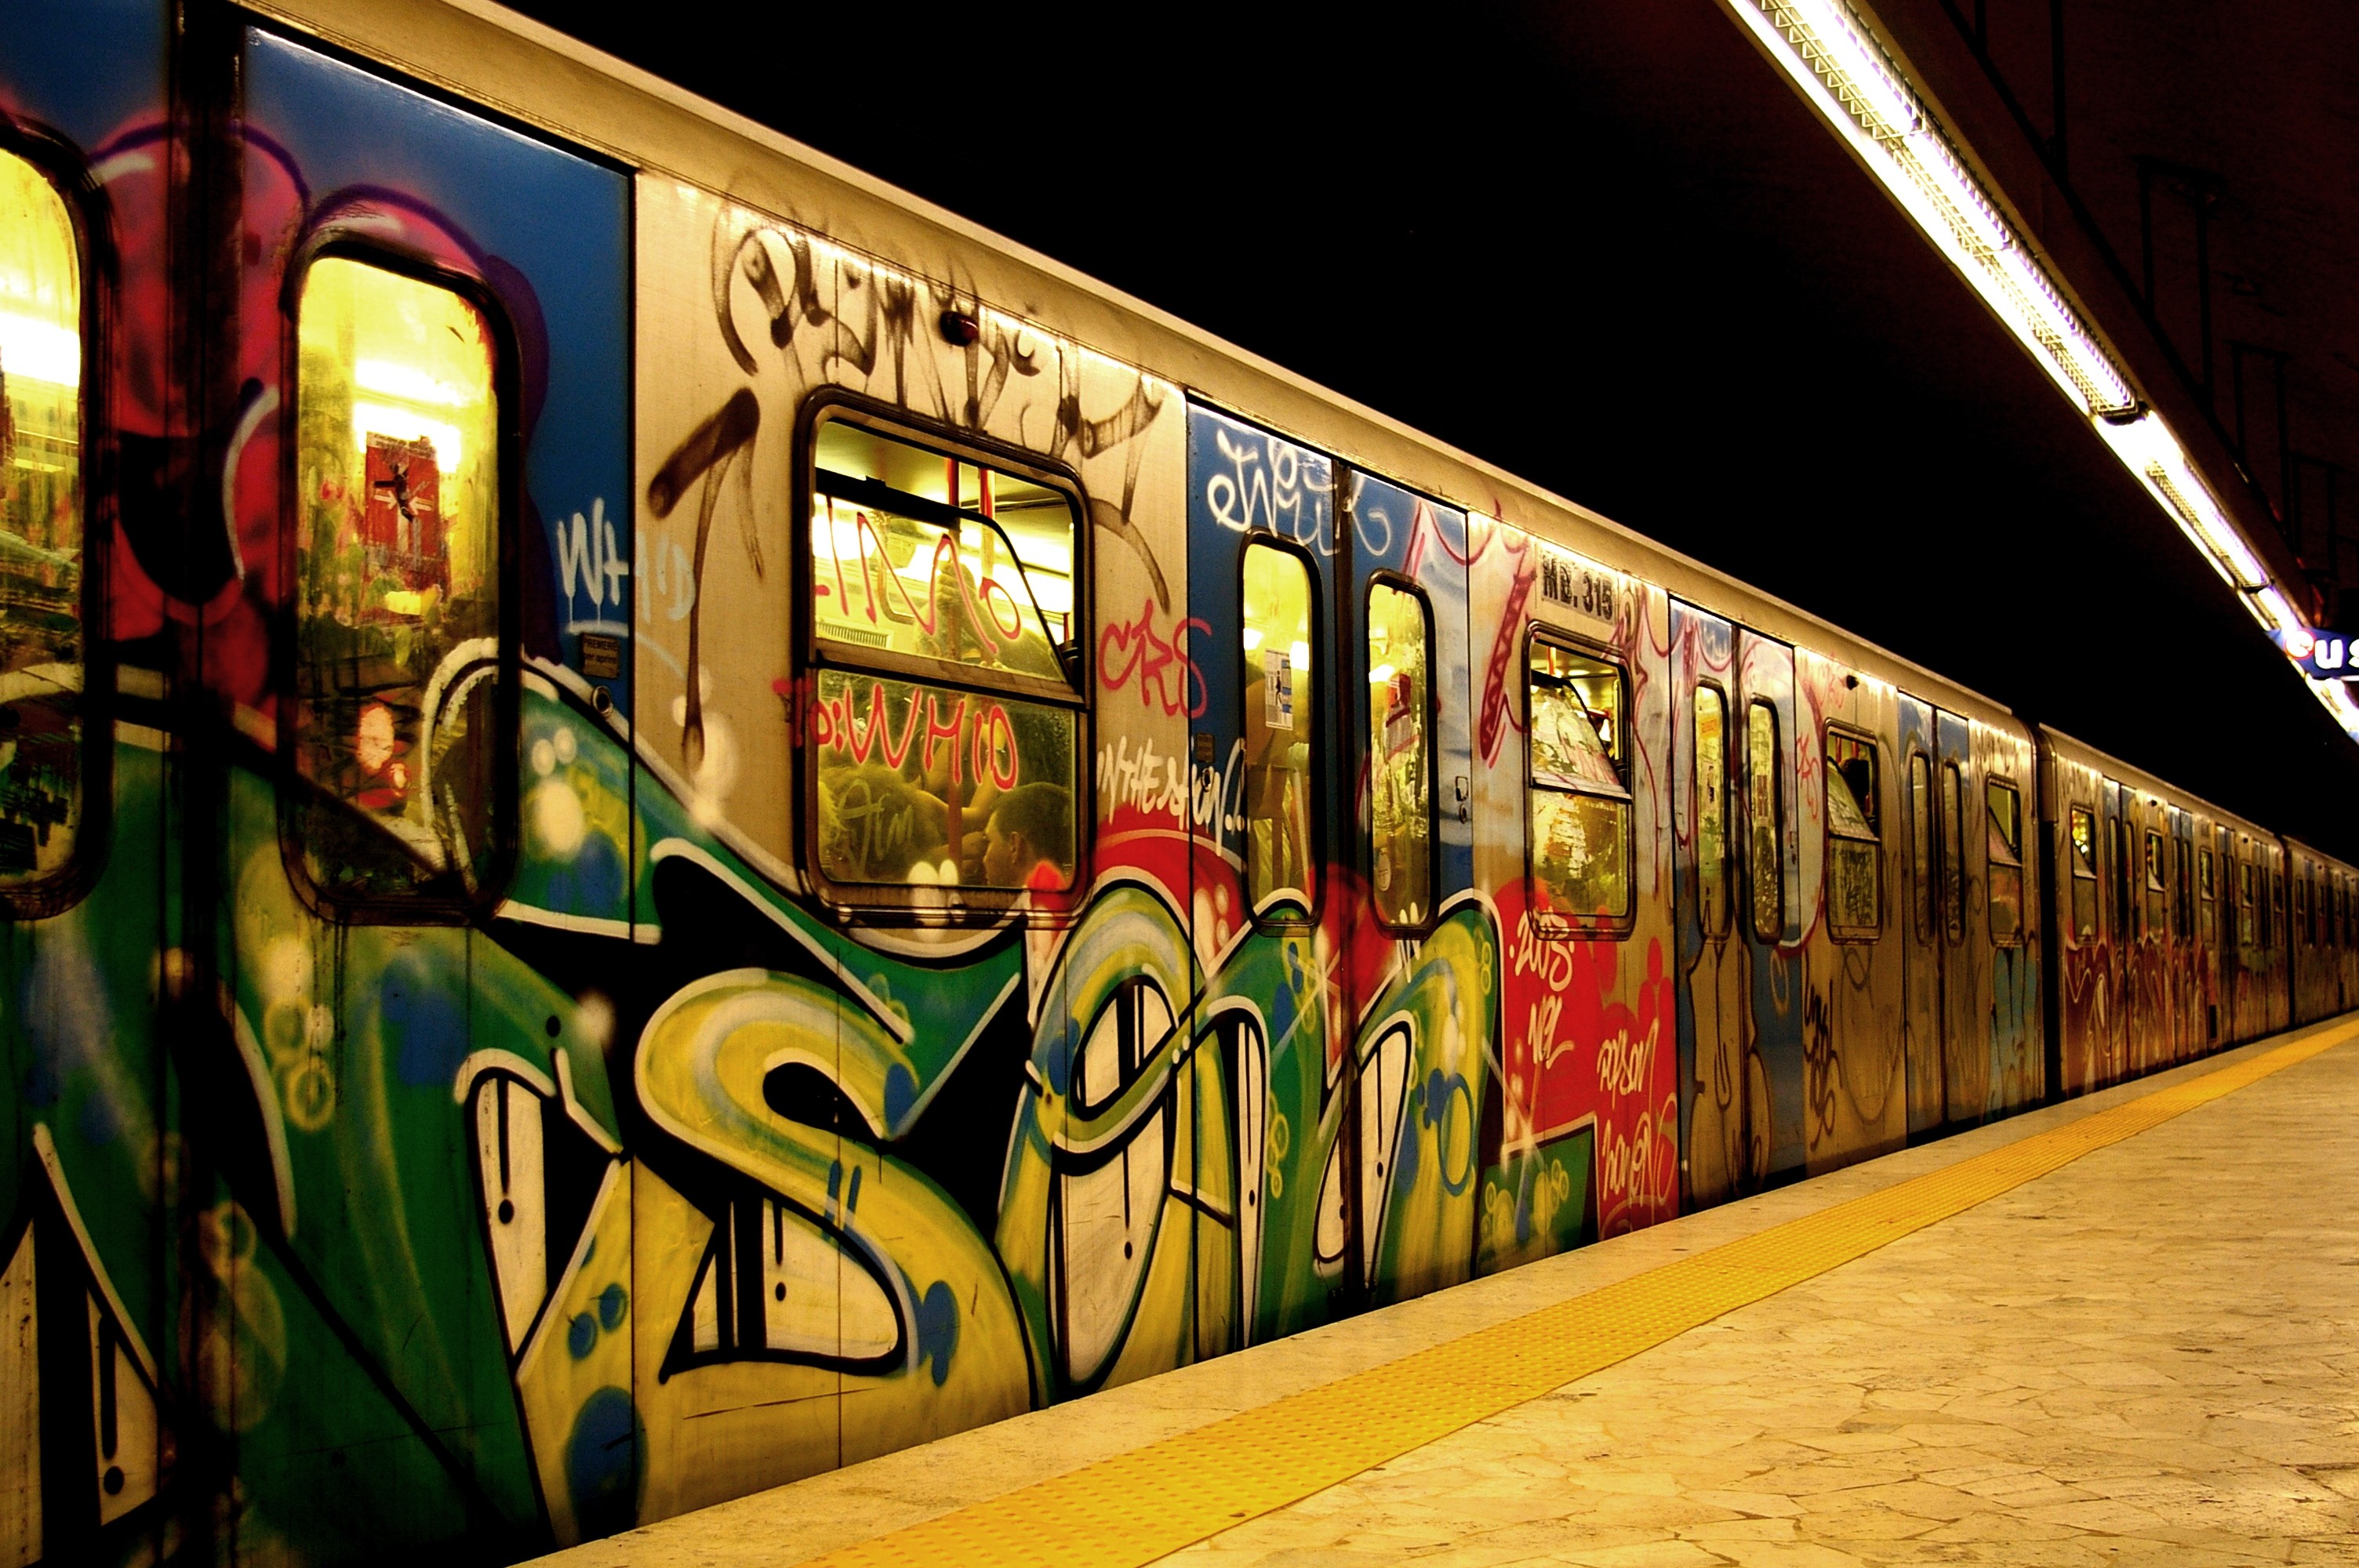 General 3008x2000 subway vehicle train underground graffiti